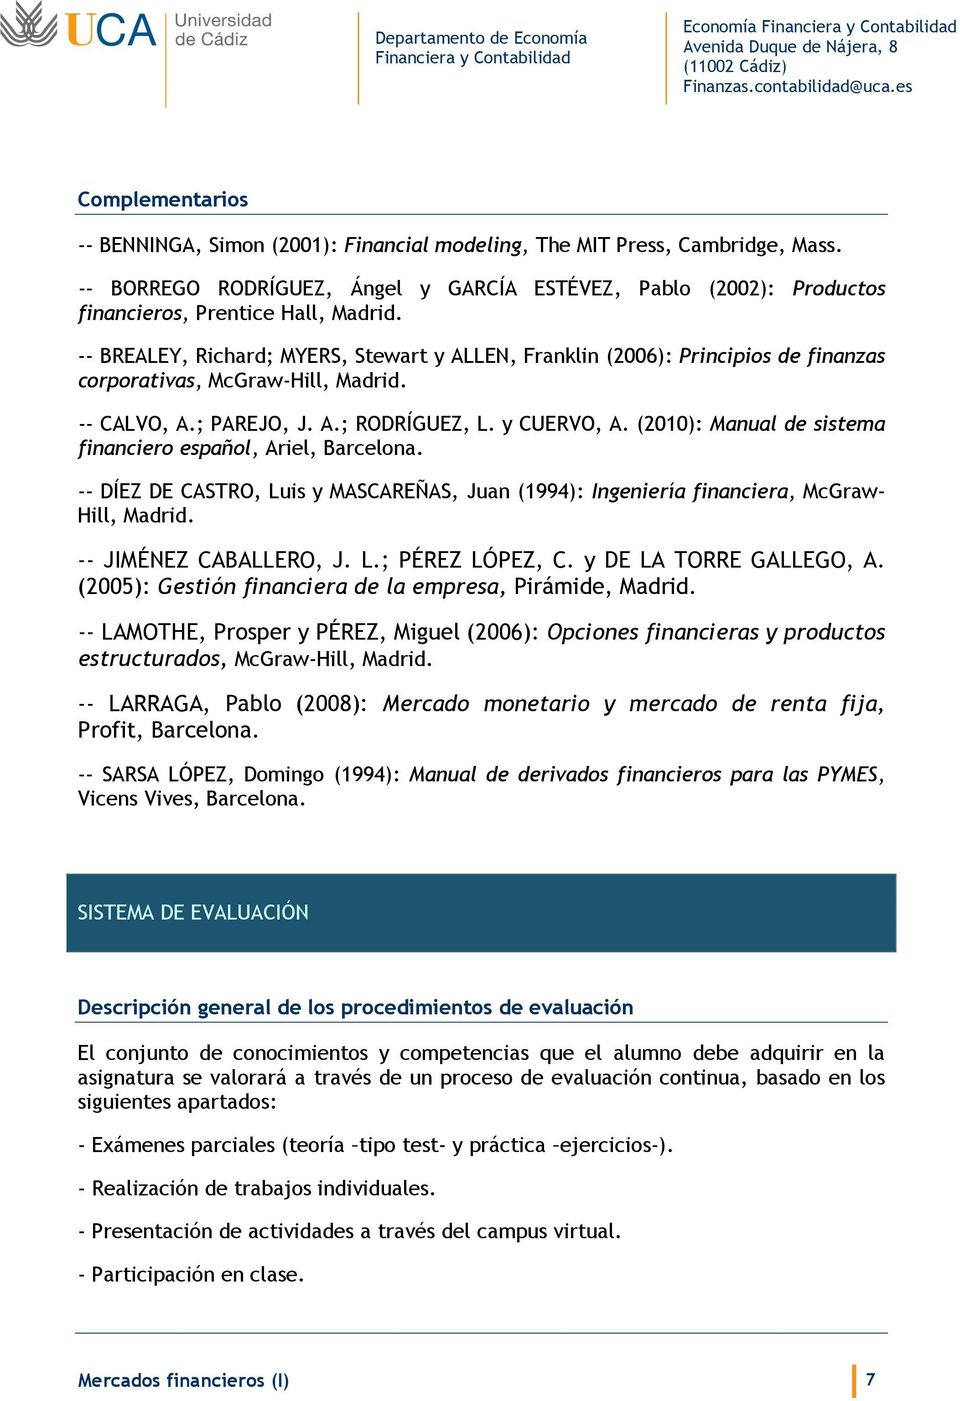 (2010): Manual de sistema financiero español, Ariel, Barcelona. -- DÍEZ DE CASTRO, Luis y MASCAREÑAS, Juan (1994): Ingeniería financiera, McGraw- Hill, Madrid. -- JIMÉNEZ CABALLERO, J. L.; PÉREZ LÓPEZ, C.